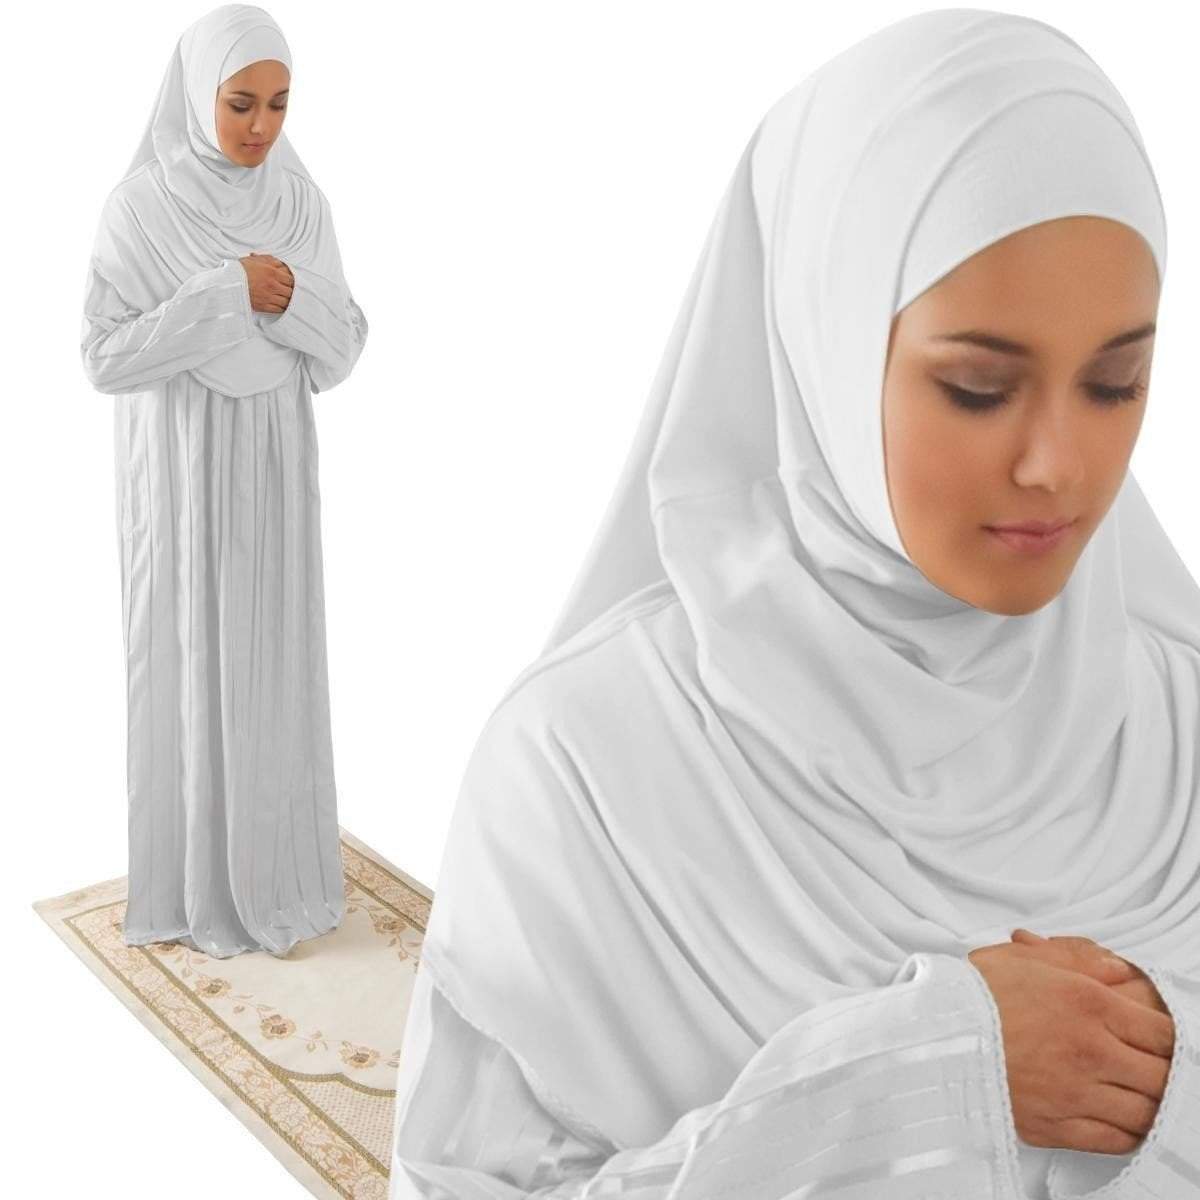 Firdevs Dress Amade Women's One-Piece Prayer Dress White Abaya Gift Set